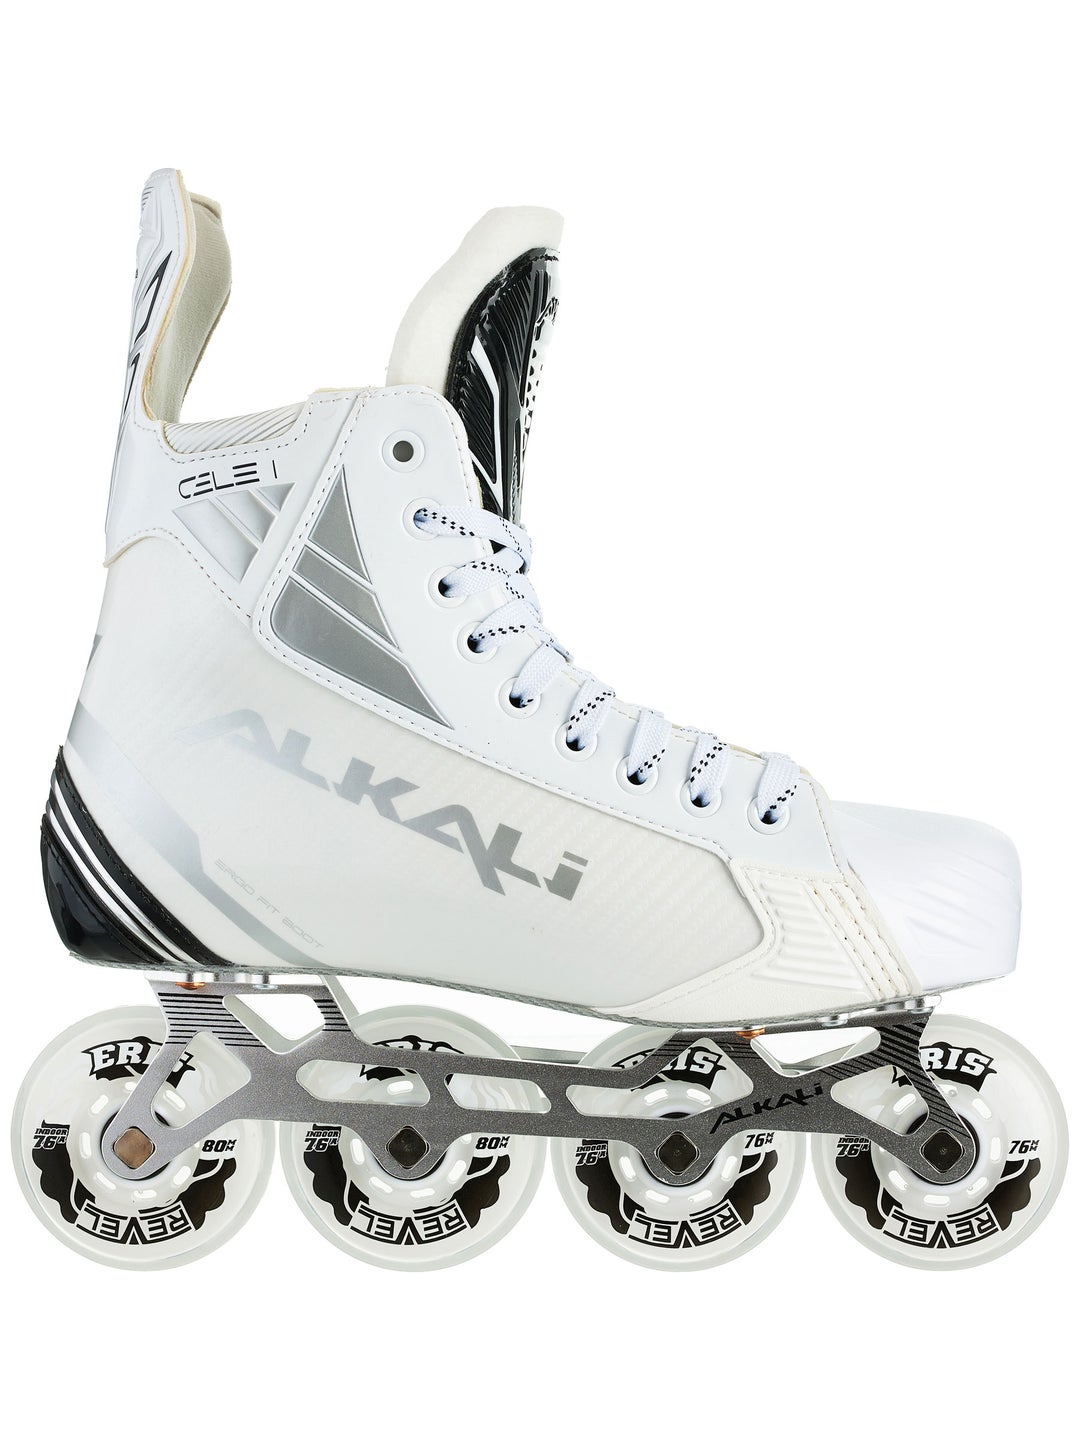 Roller Hockey Skates & Gear - Hockey Gear - Pro Stock Hockey 